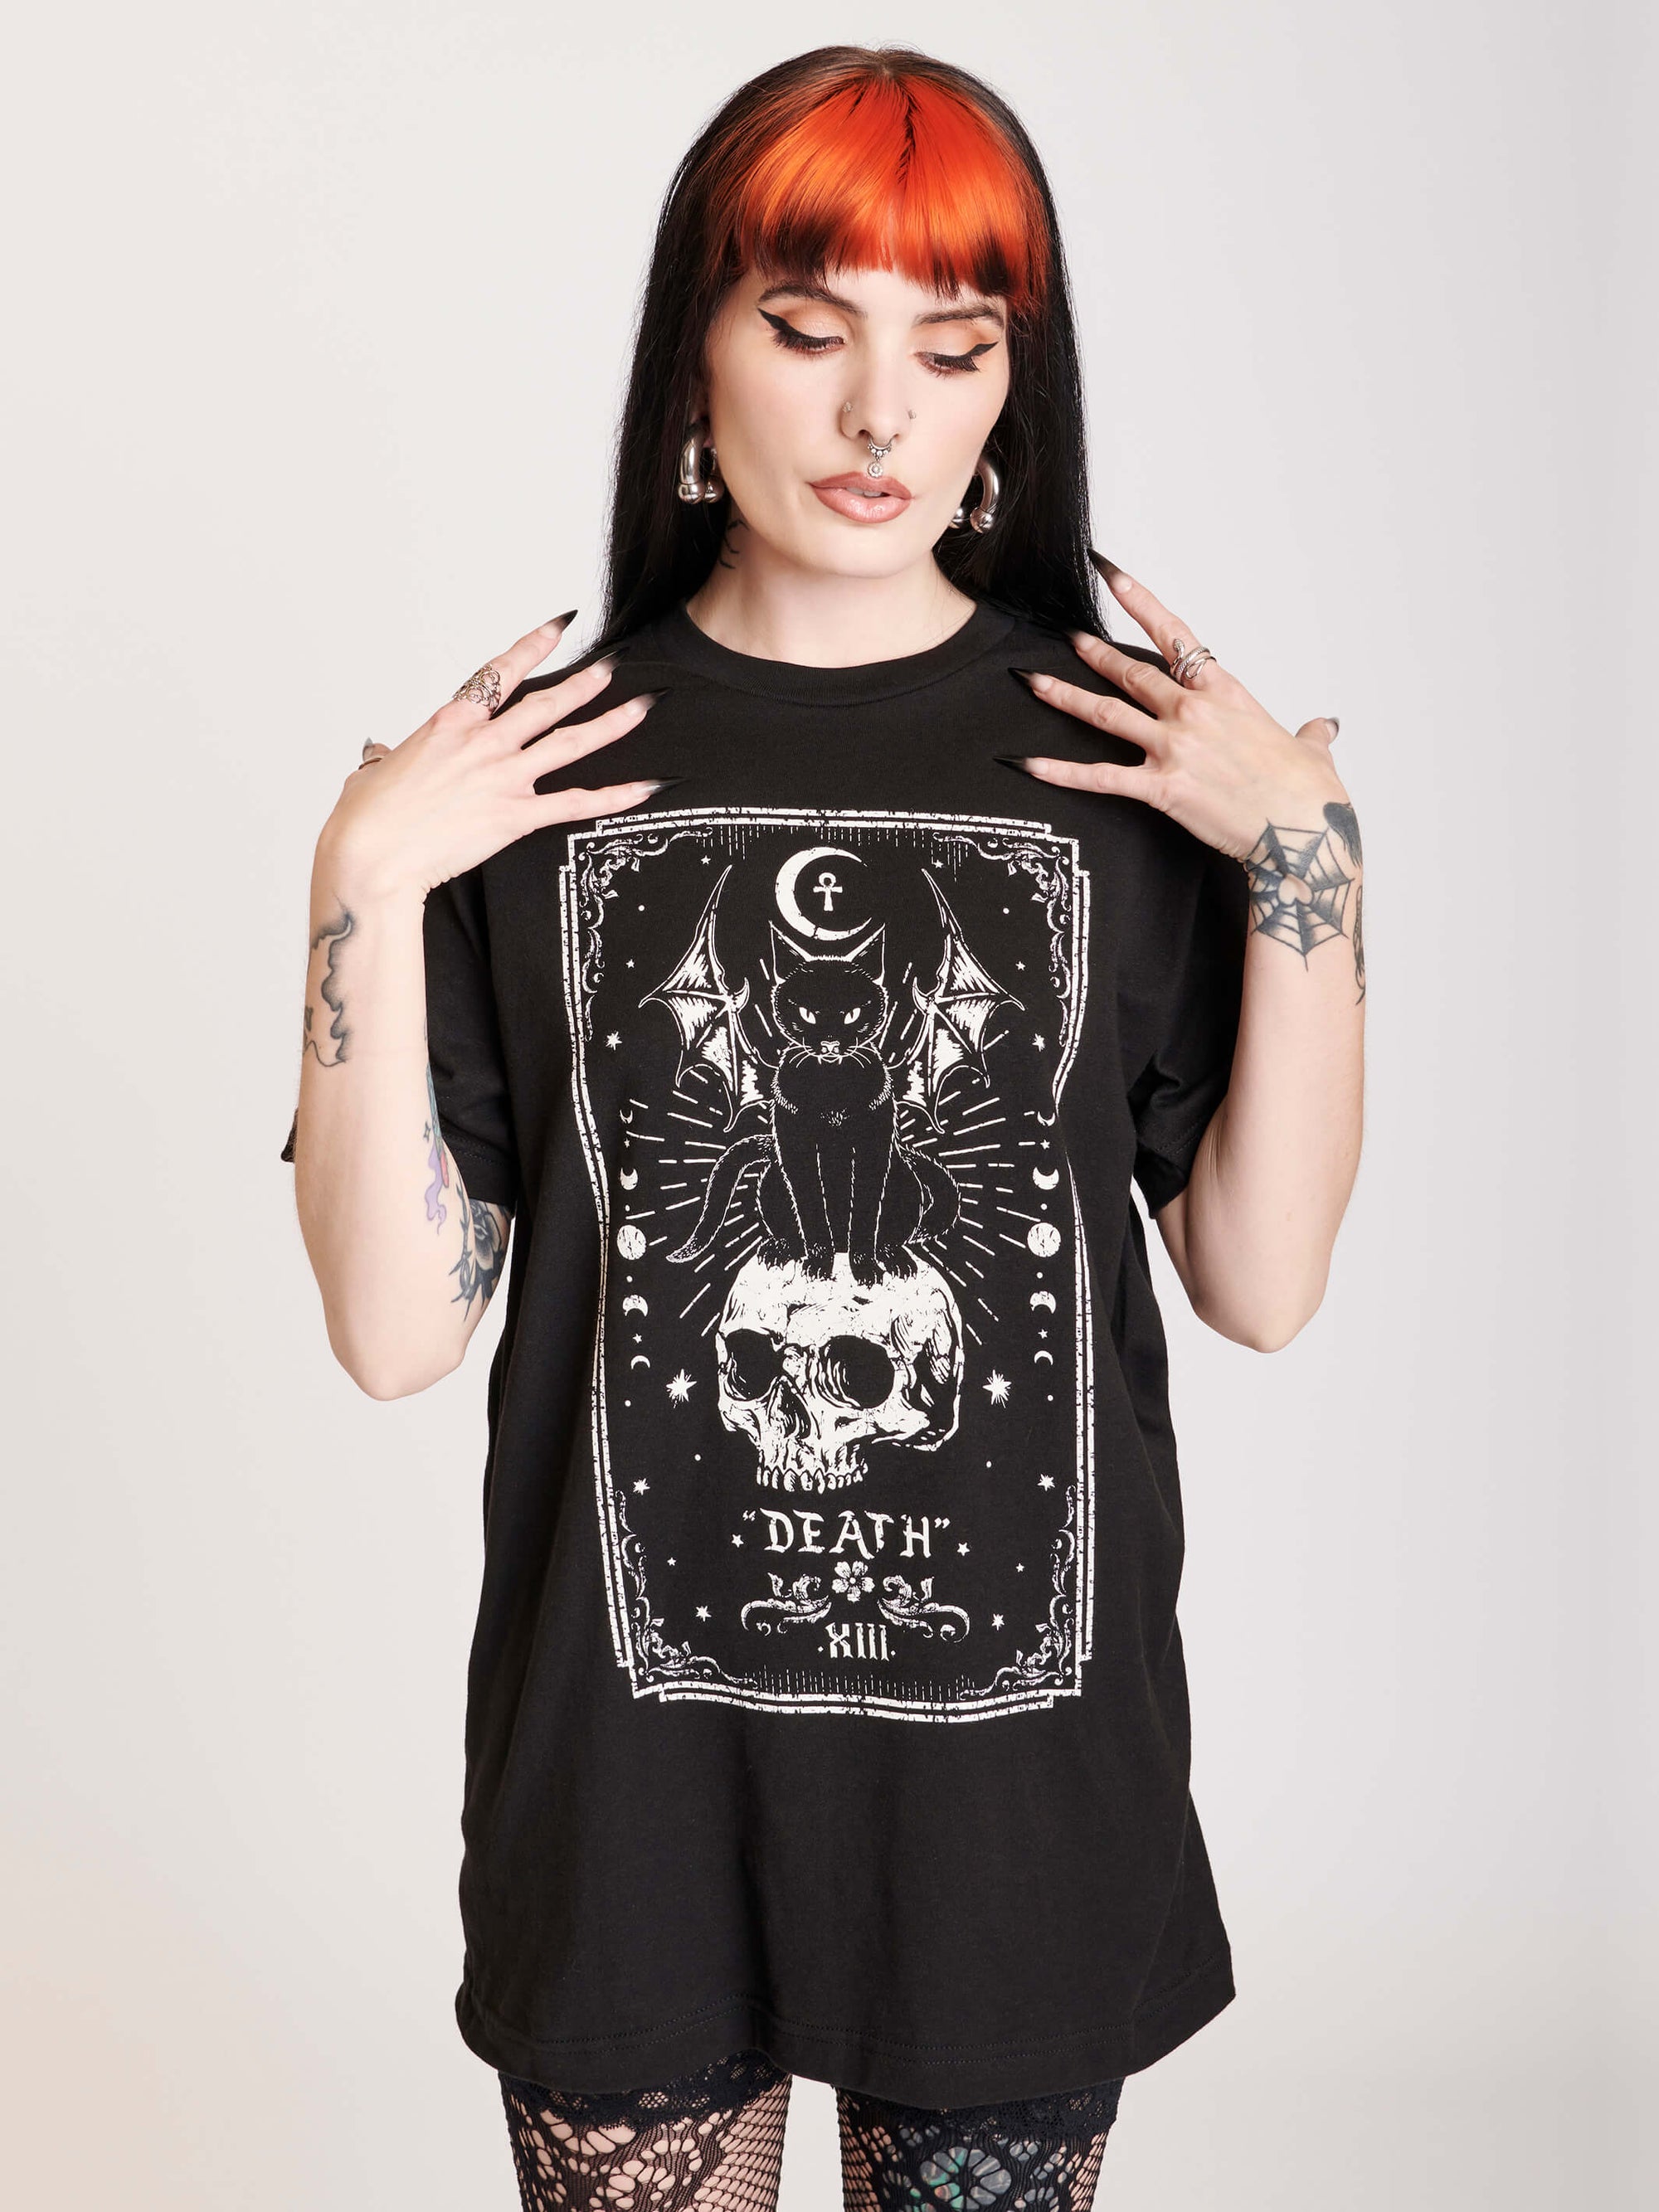 Death tarot card cat skull tshirt